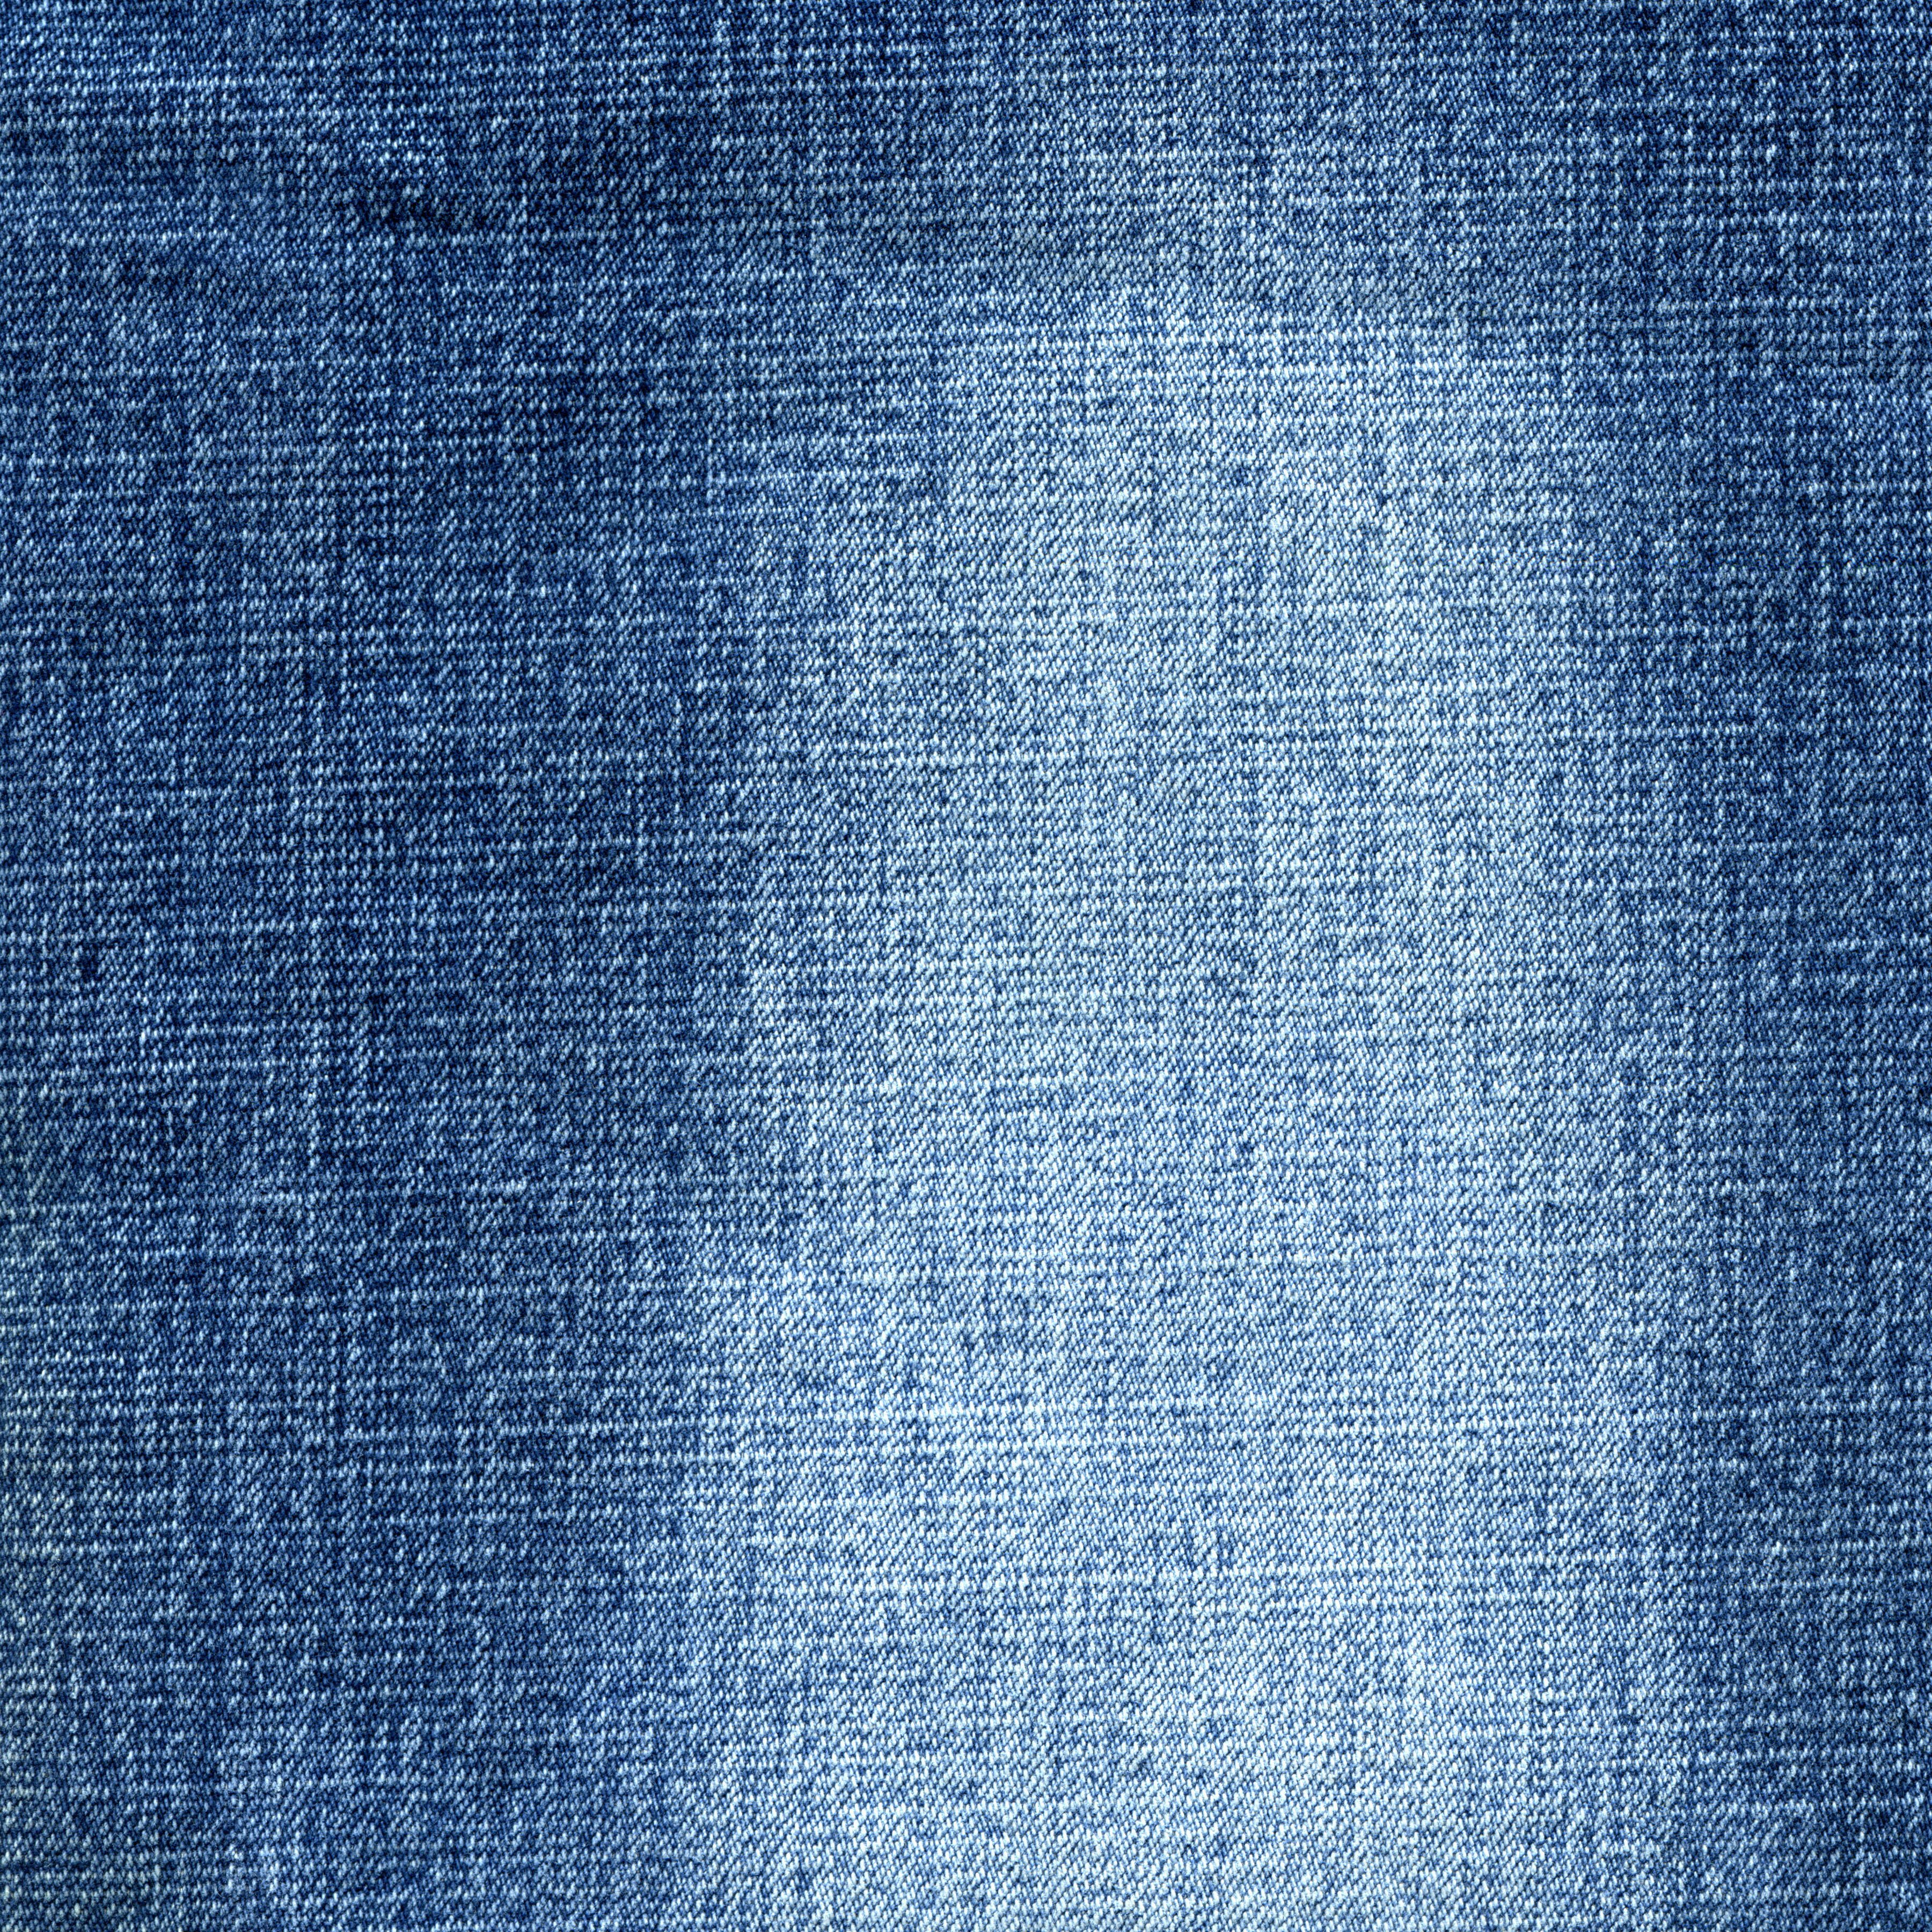 Текстура джинсов. Джинсовая ткань. Текстура джинсовой ткани. Фактура джинсовой ткани. Джинсы ткань.